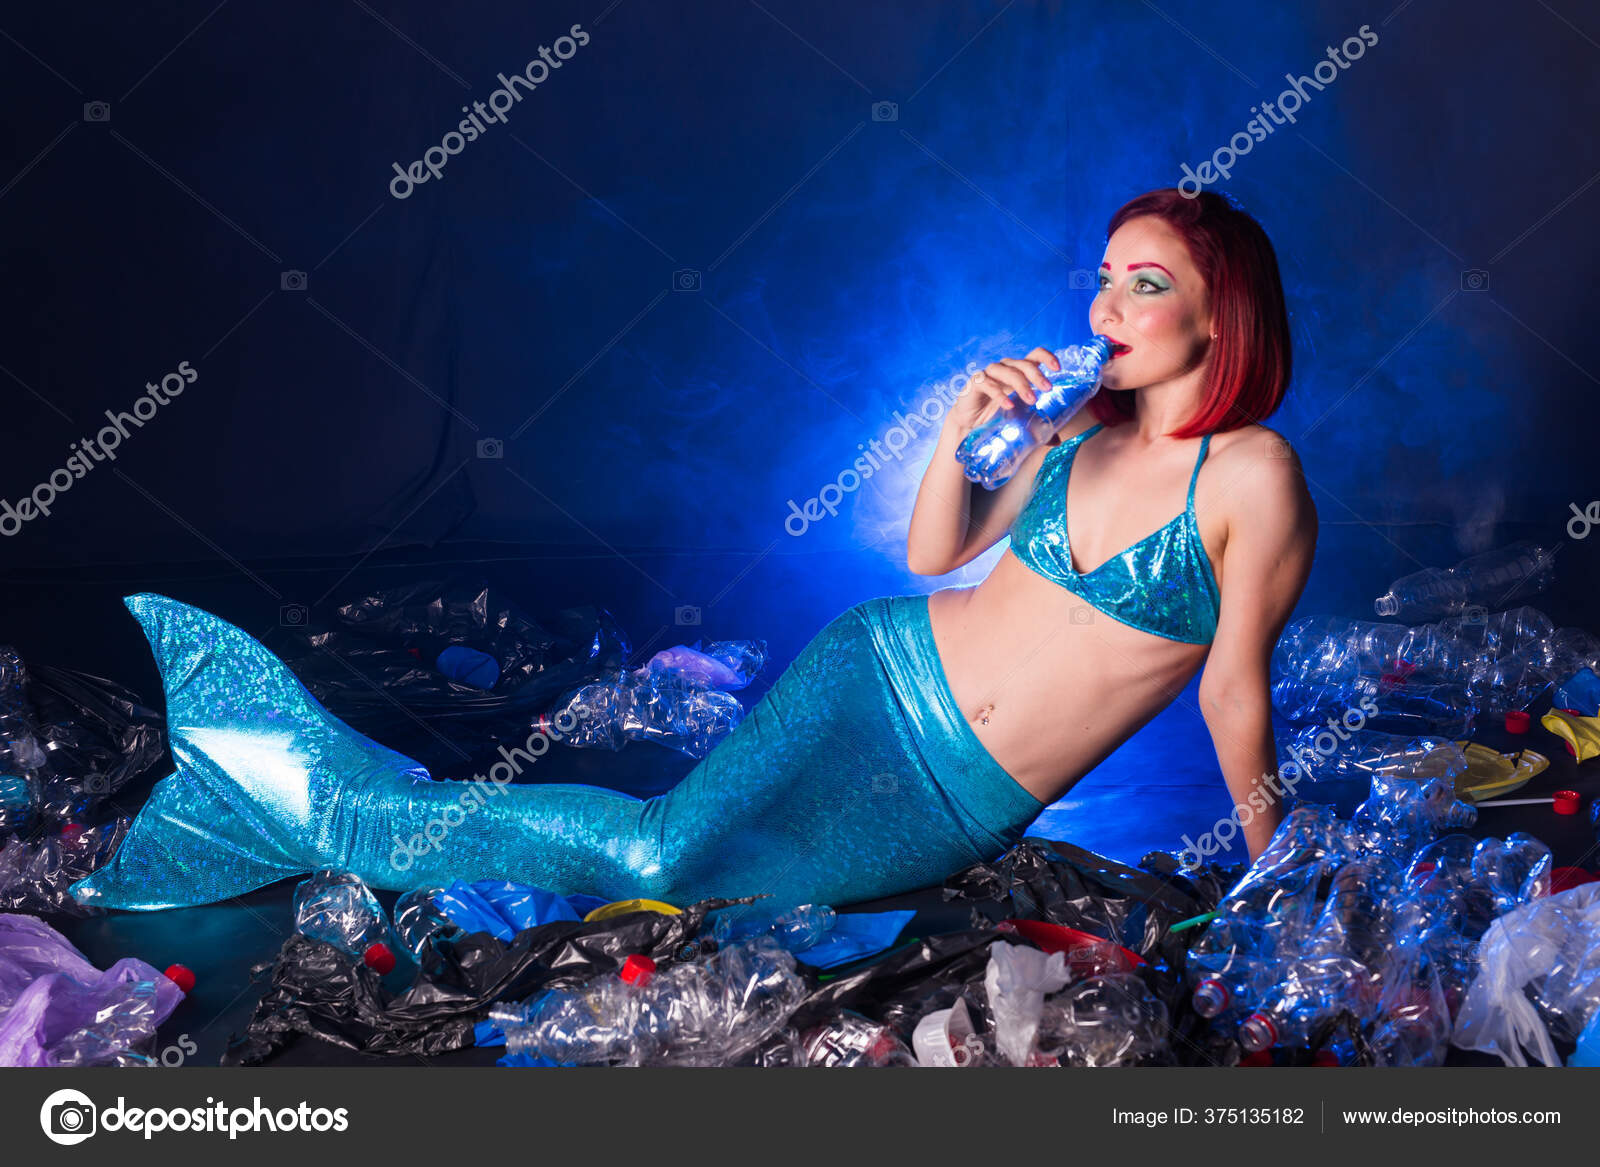 Fantasy stupid mermaid in deep ocean. Plastic water bottles and